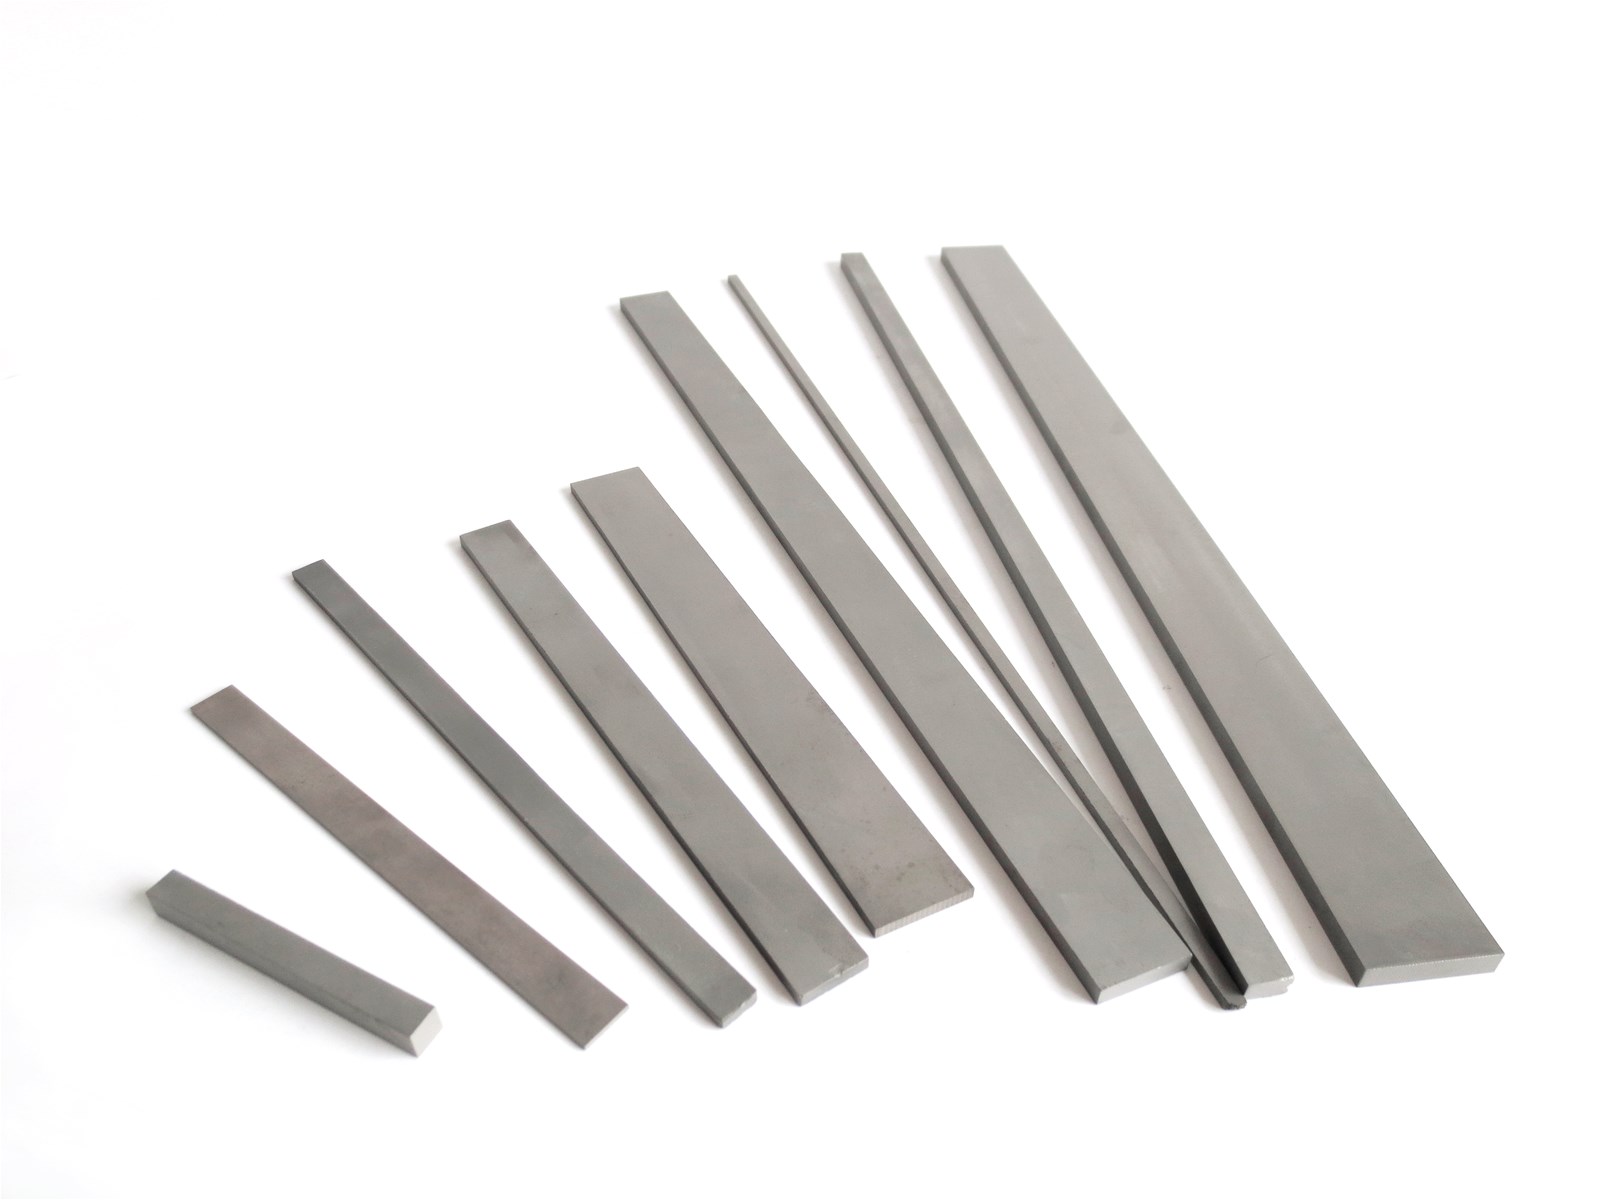 Factory Wholesale Custom High Quality Carbide Strip